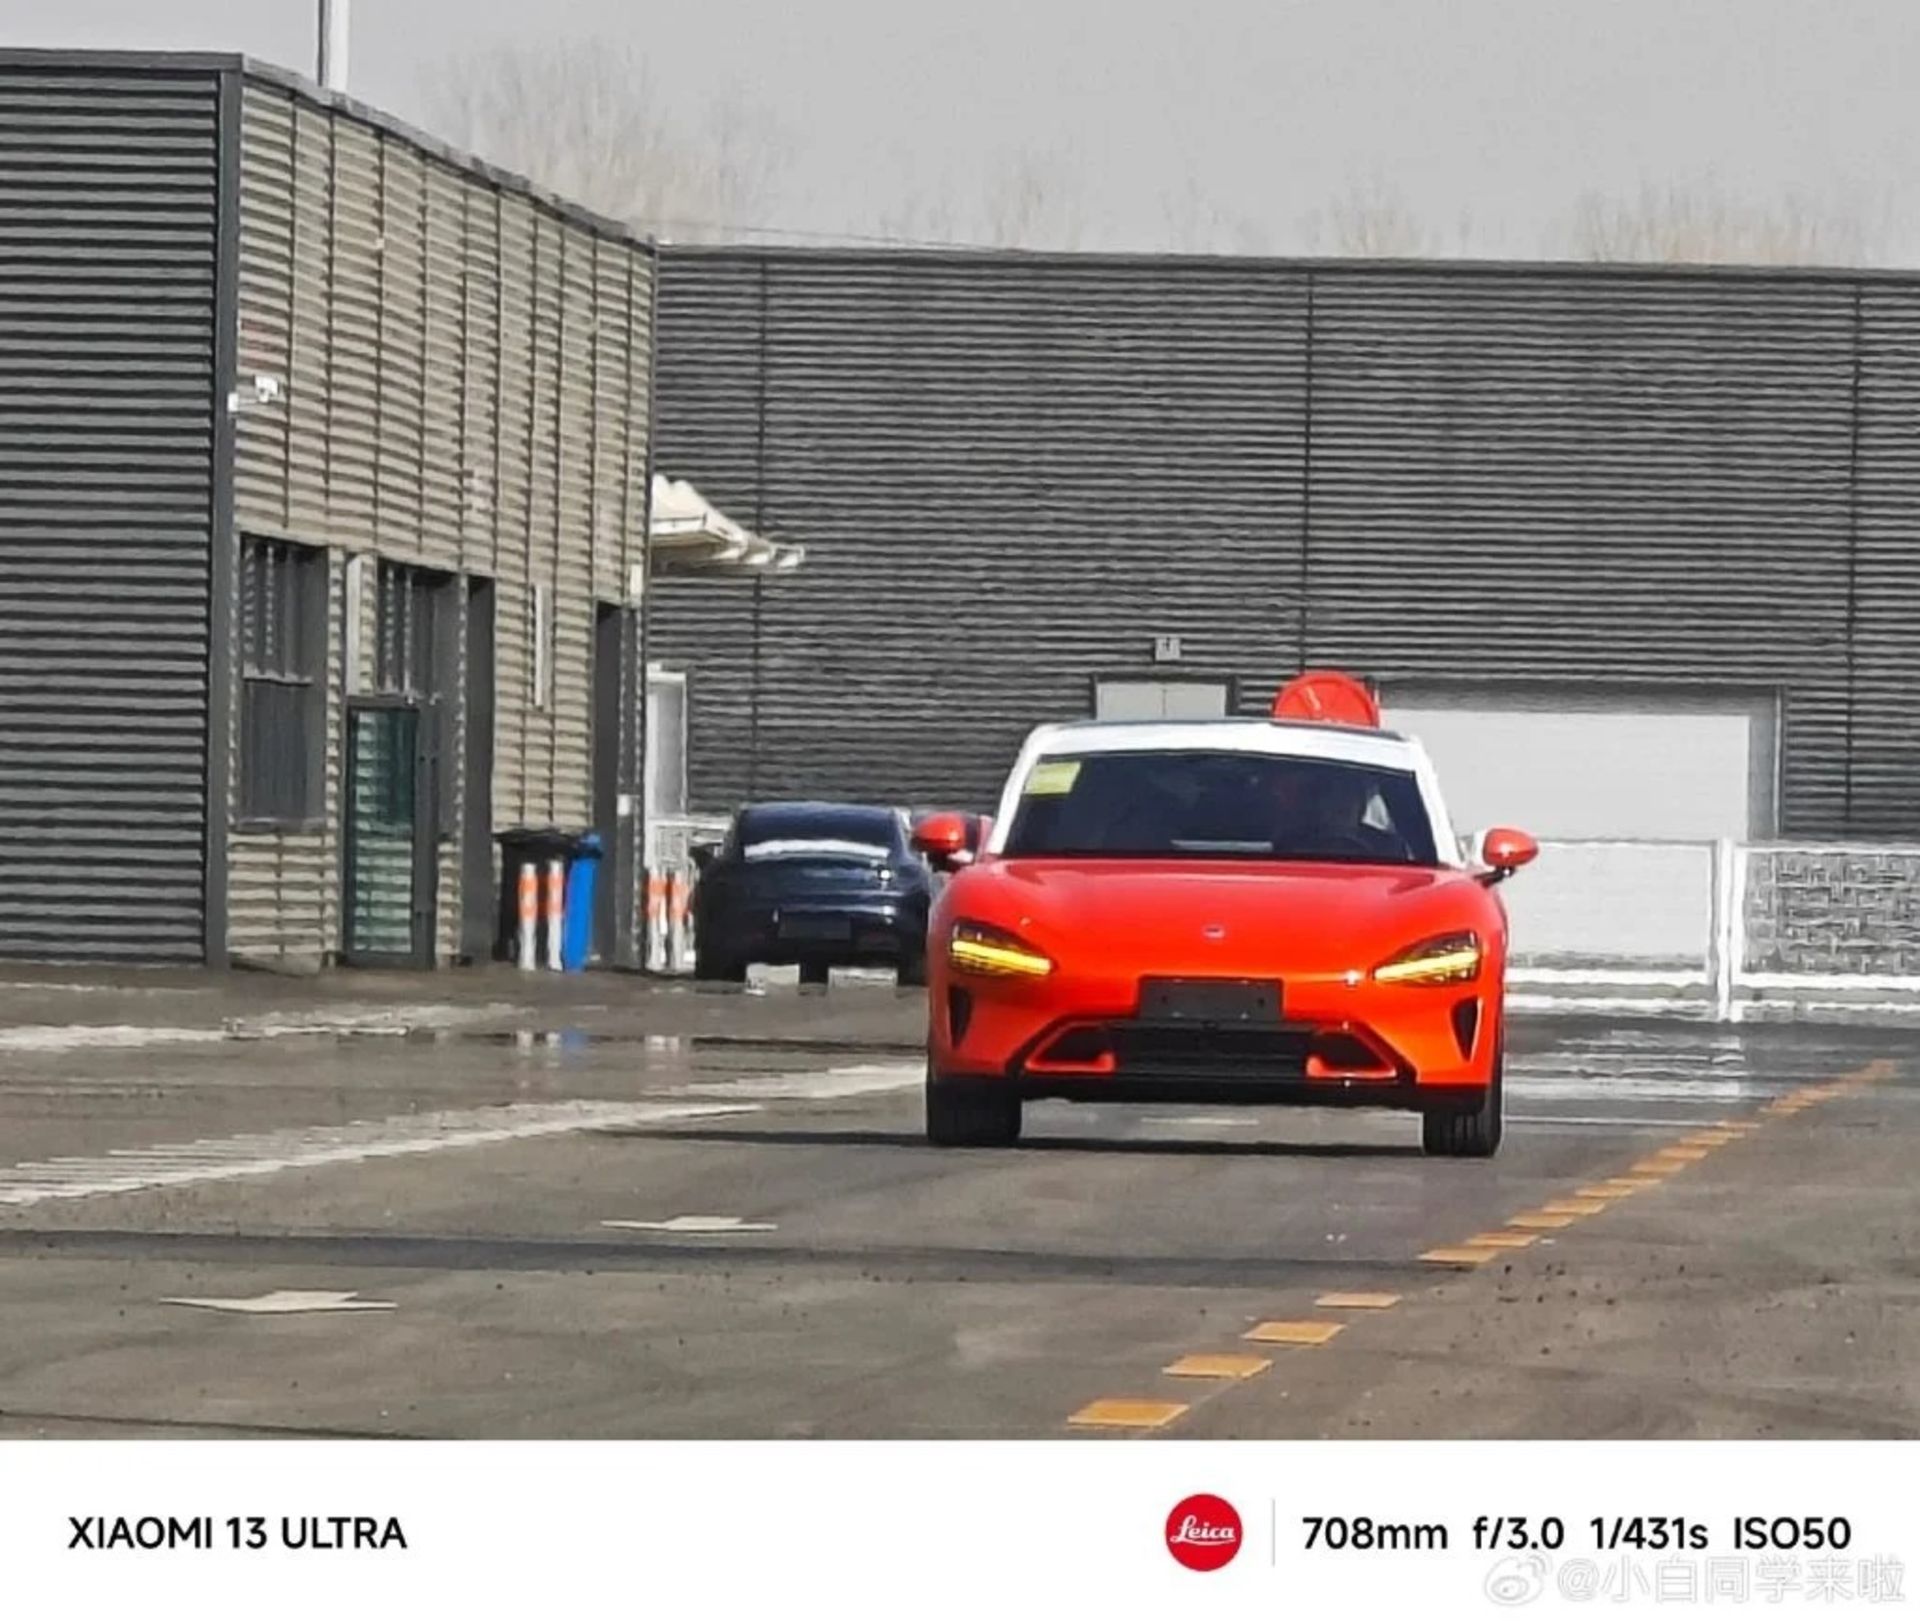 خودرو شیائومی SU7 از نمای جلو در کارخانه به رنگ نارنجی